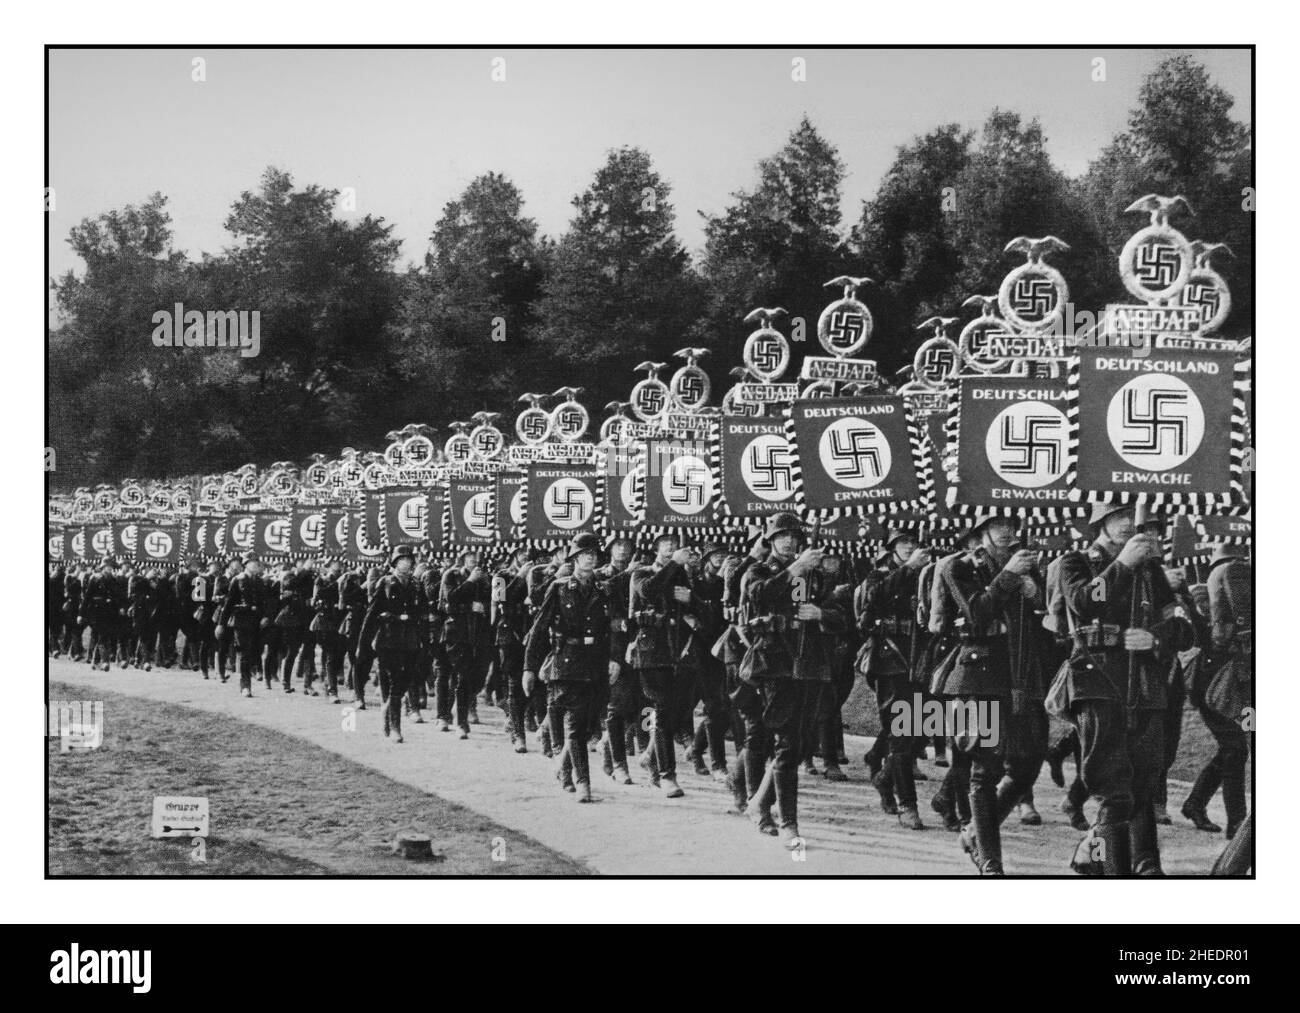 Truppe naziste SS che detengono striscioni con NSDAP Deutschland Erwache 'la Germania svegli' 'Congresso della Vittoria' (V Congresso del Partito Imperiale) Standard dello Schutzstaffel al Reichsparteitag, 1936 -in Norimberga Parata Norimberga Germania nazista Foto Stock